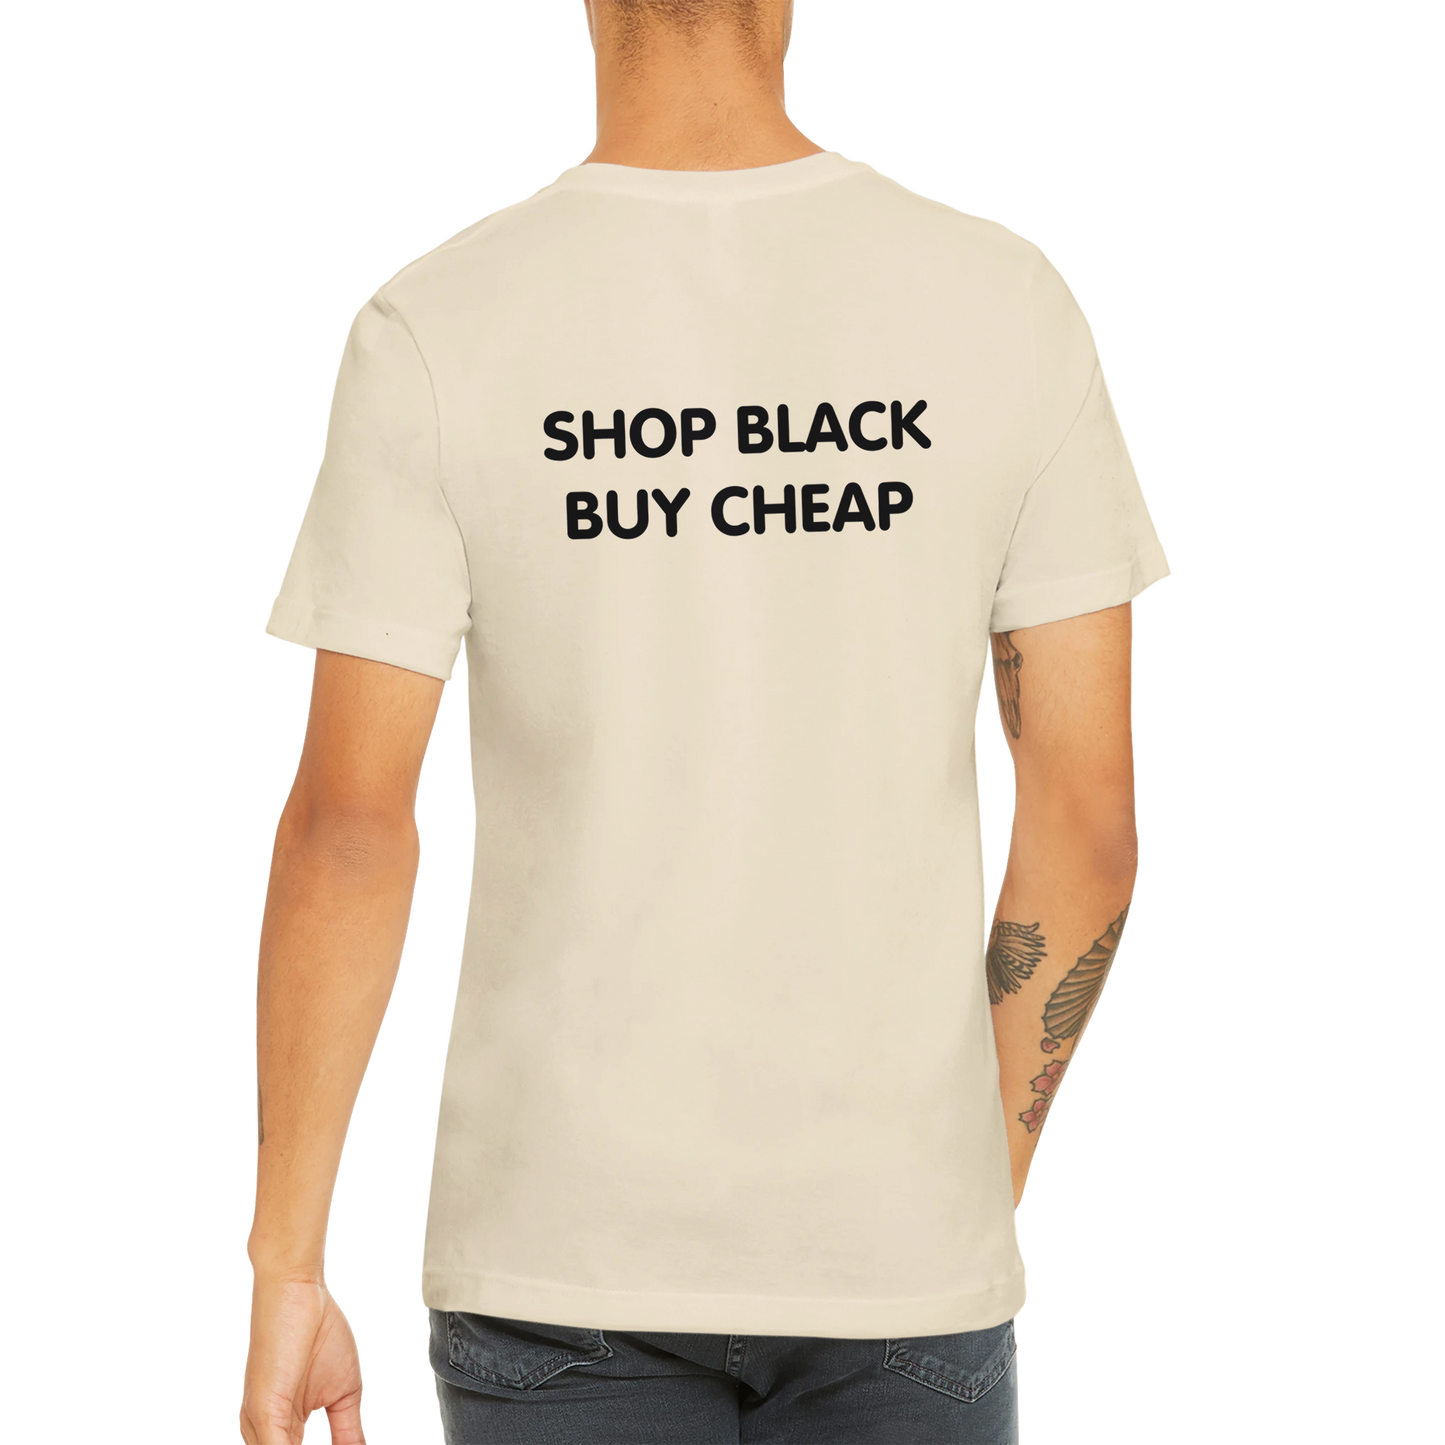 SHOP BLACK BUY CHEAP - Premium Unisex Crewneck T-shirt